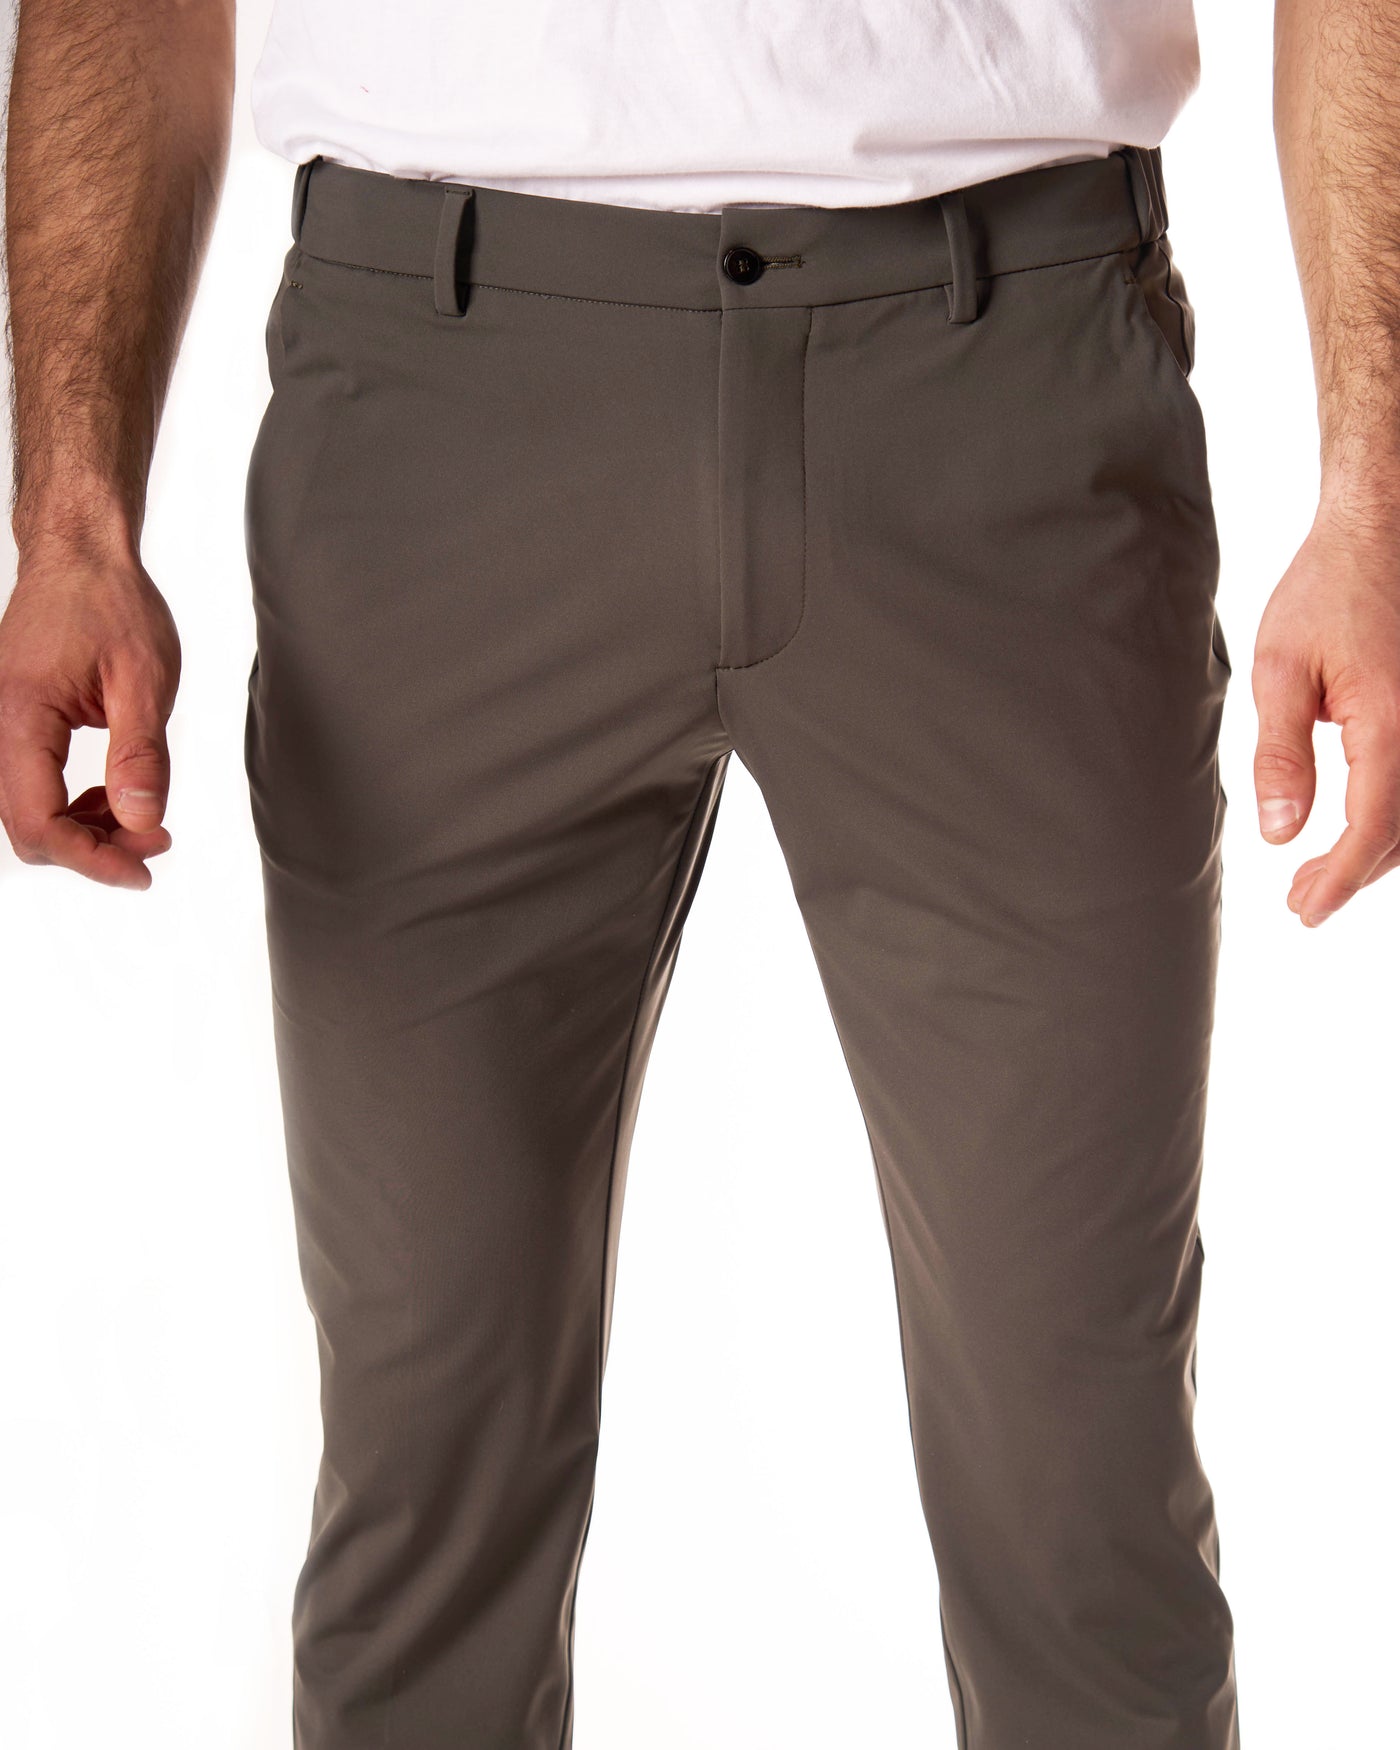 Pantaloni tecnico elastico color militare